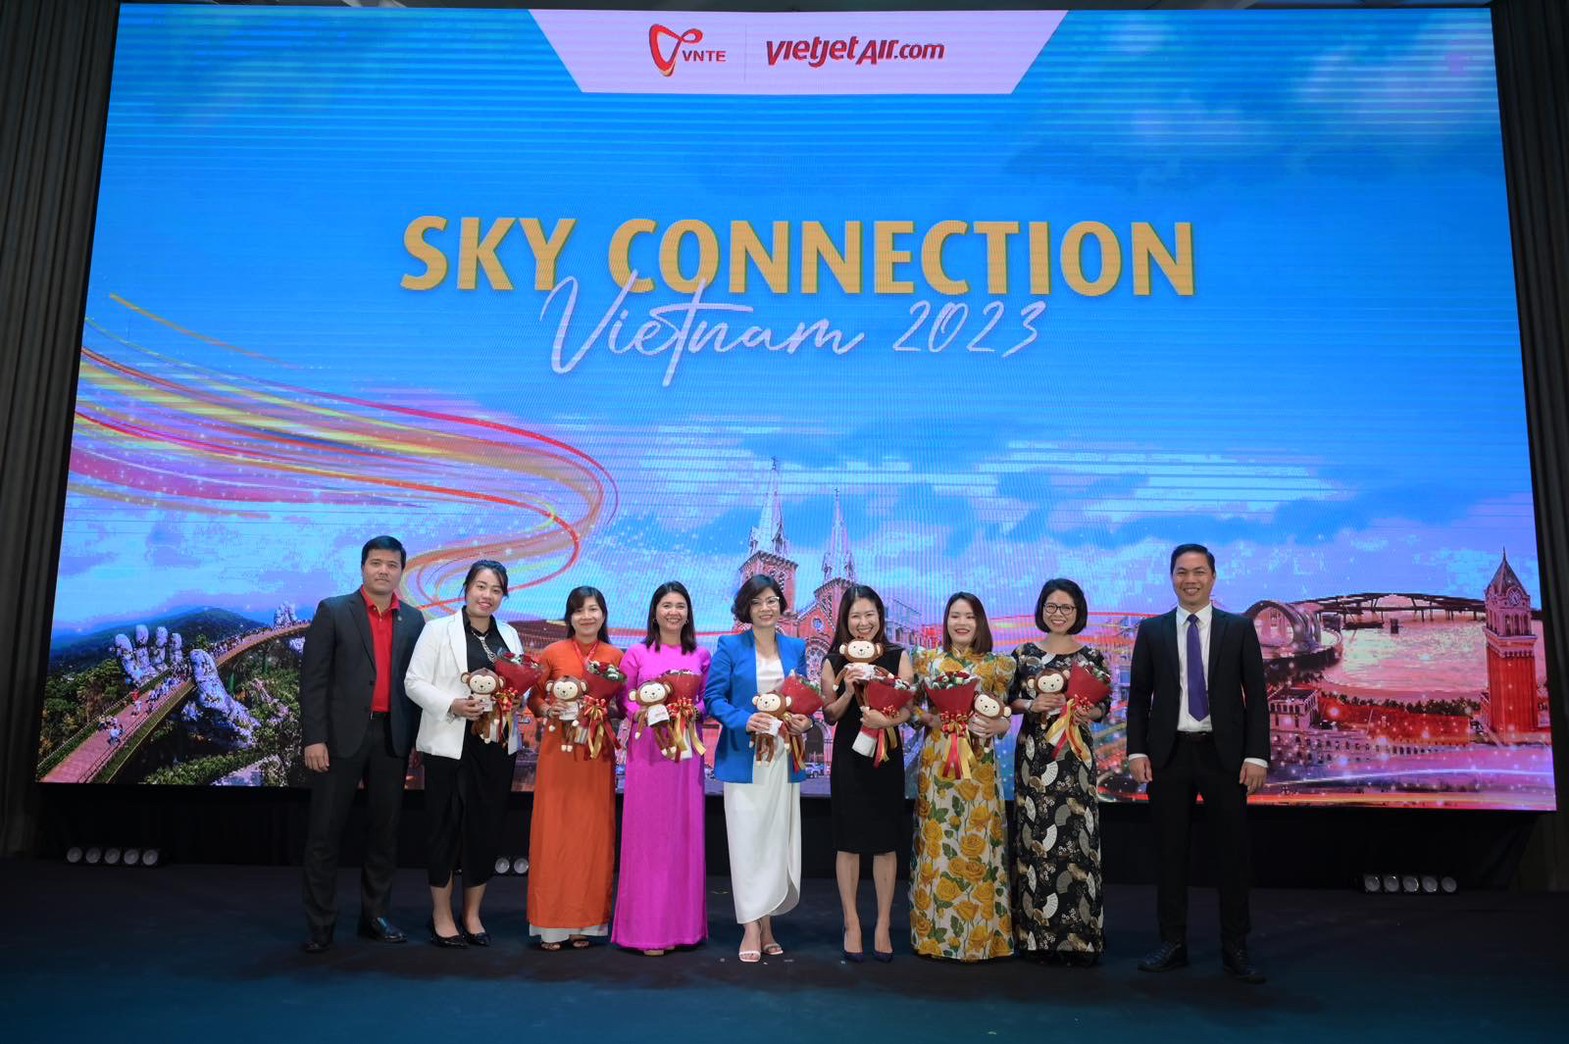 ไทยเวียตเจ็ทเชื่อมการท่องเที่ยวไทย - เวียดนาม

จัดงาน “SKY CONNECTION – VIETNAM 2023” ครั้งที่ 2